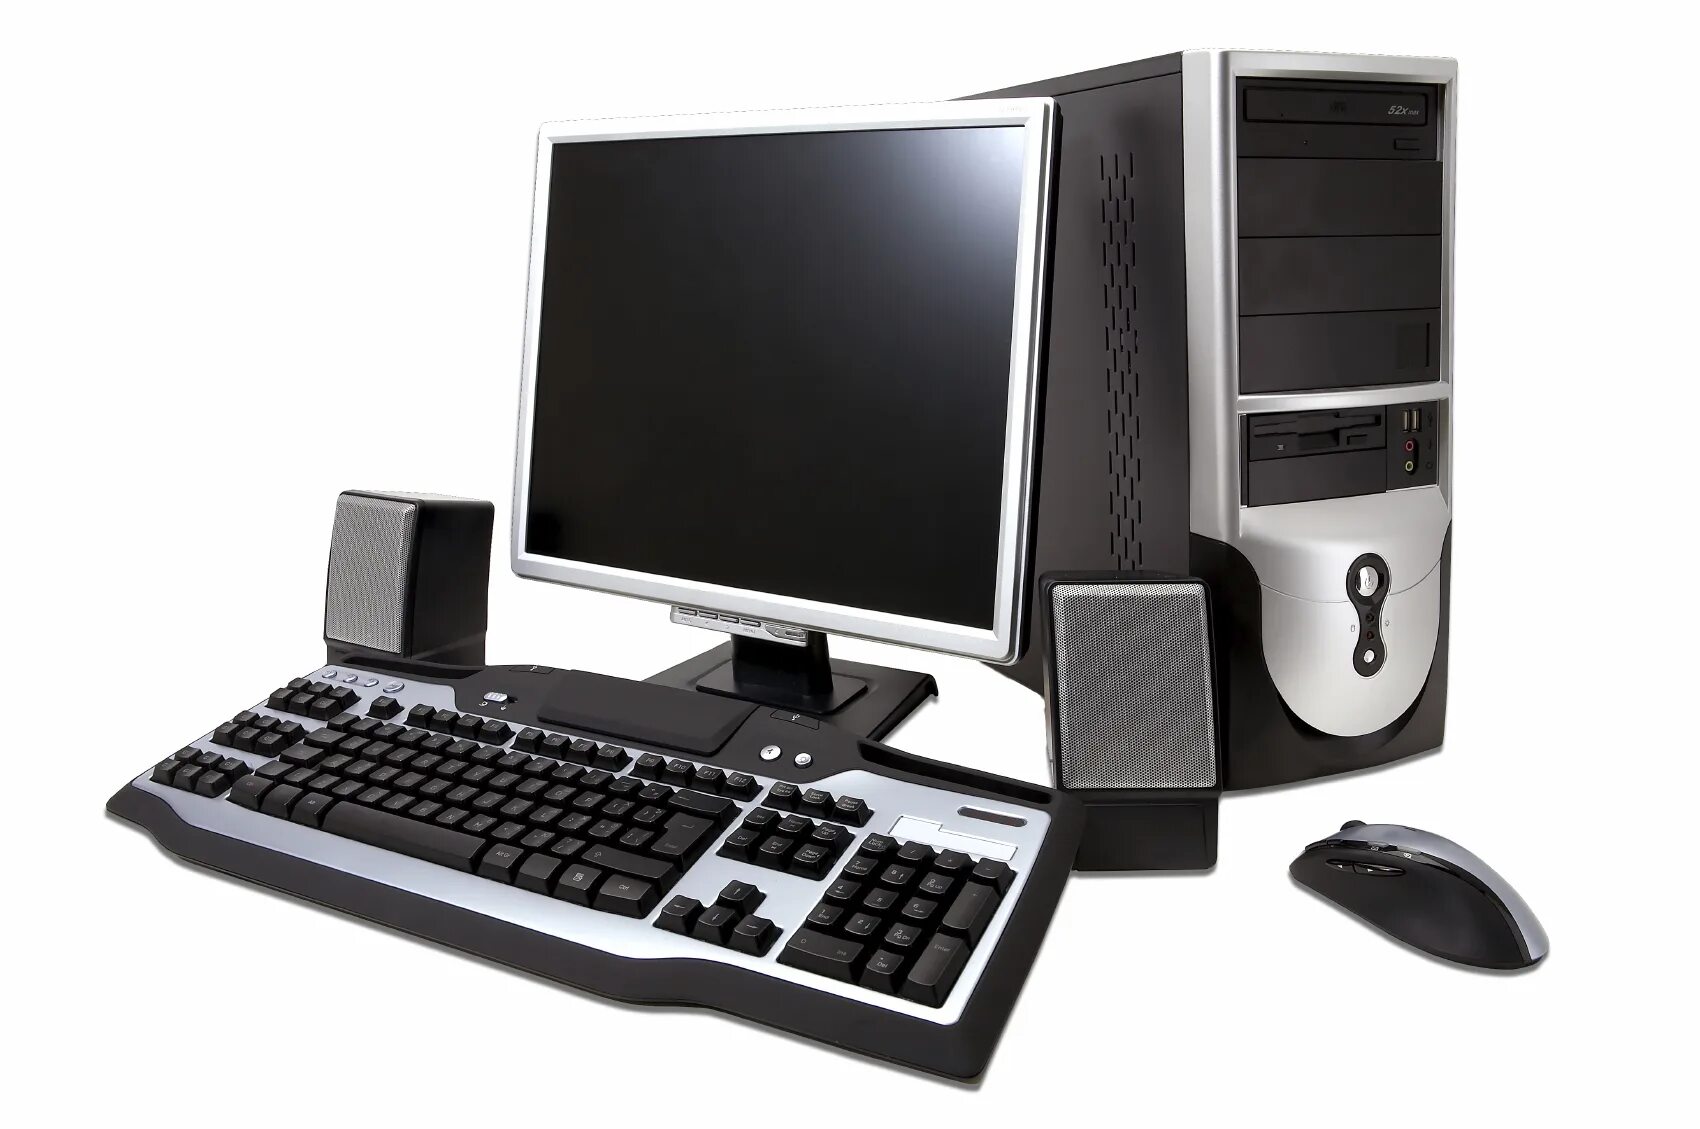 Pc packages. Системный блок (компьютерная техника i3-3220). Компьютер (сист. Блок, монитор TFT 27 Acer Black). Инв.. ПК мышь клавиатура монитор 2021. Персональныйпомпьютер.